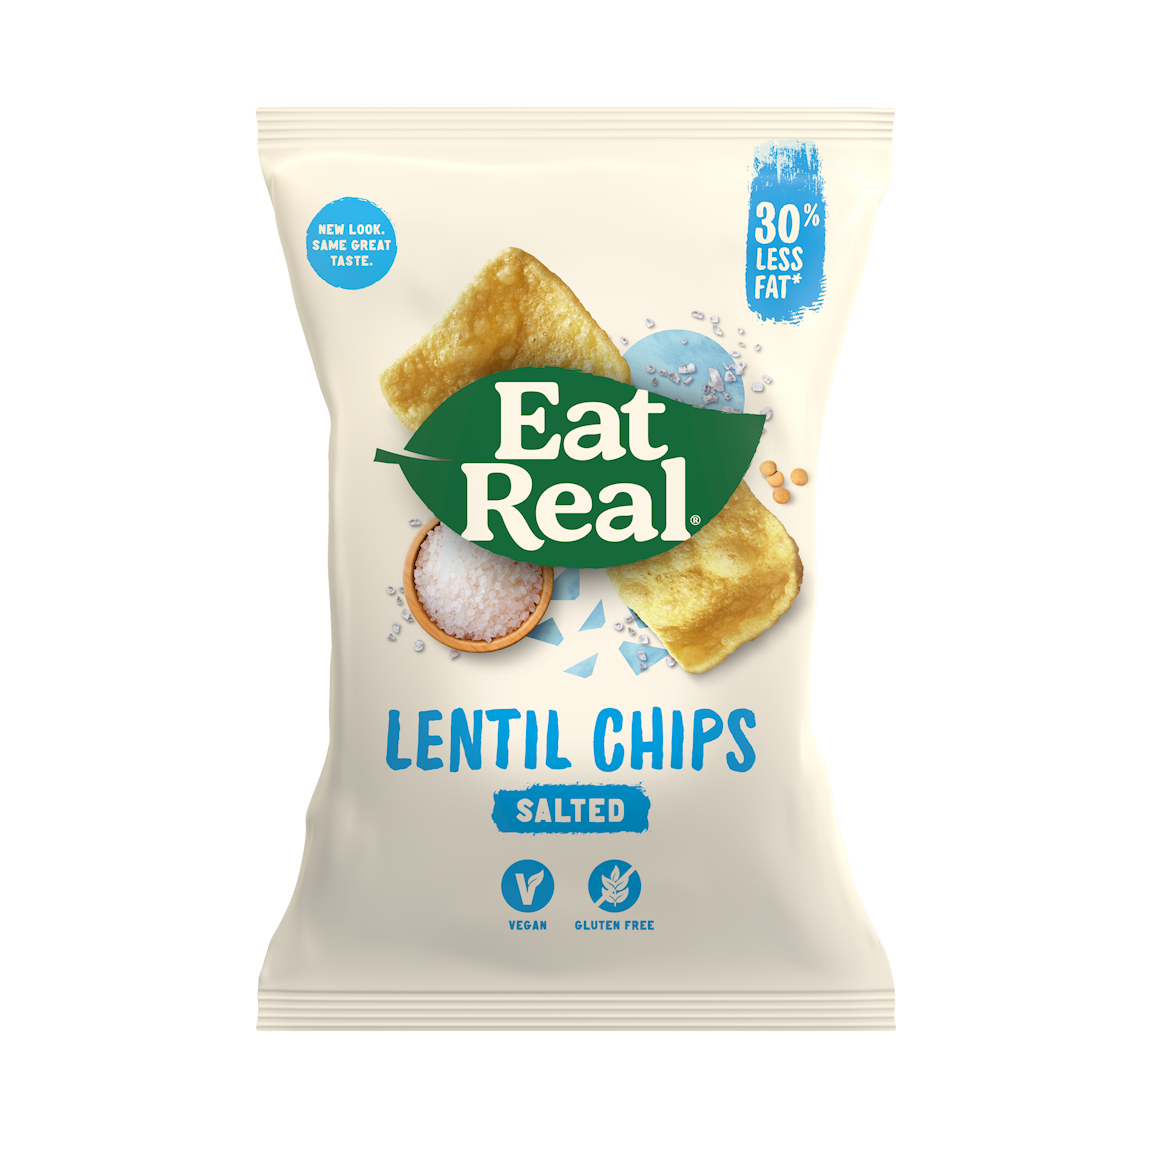 Eat Real Lentil Chips Sea Salt 113gm Gluten Free and Vegan